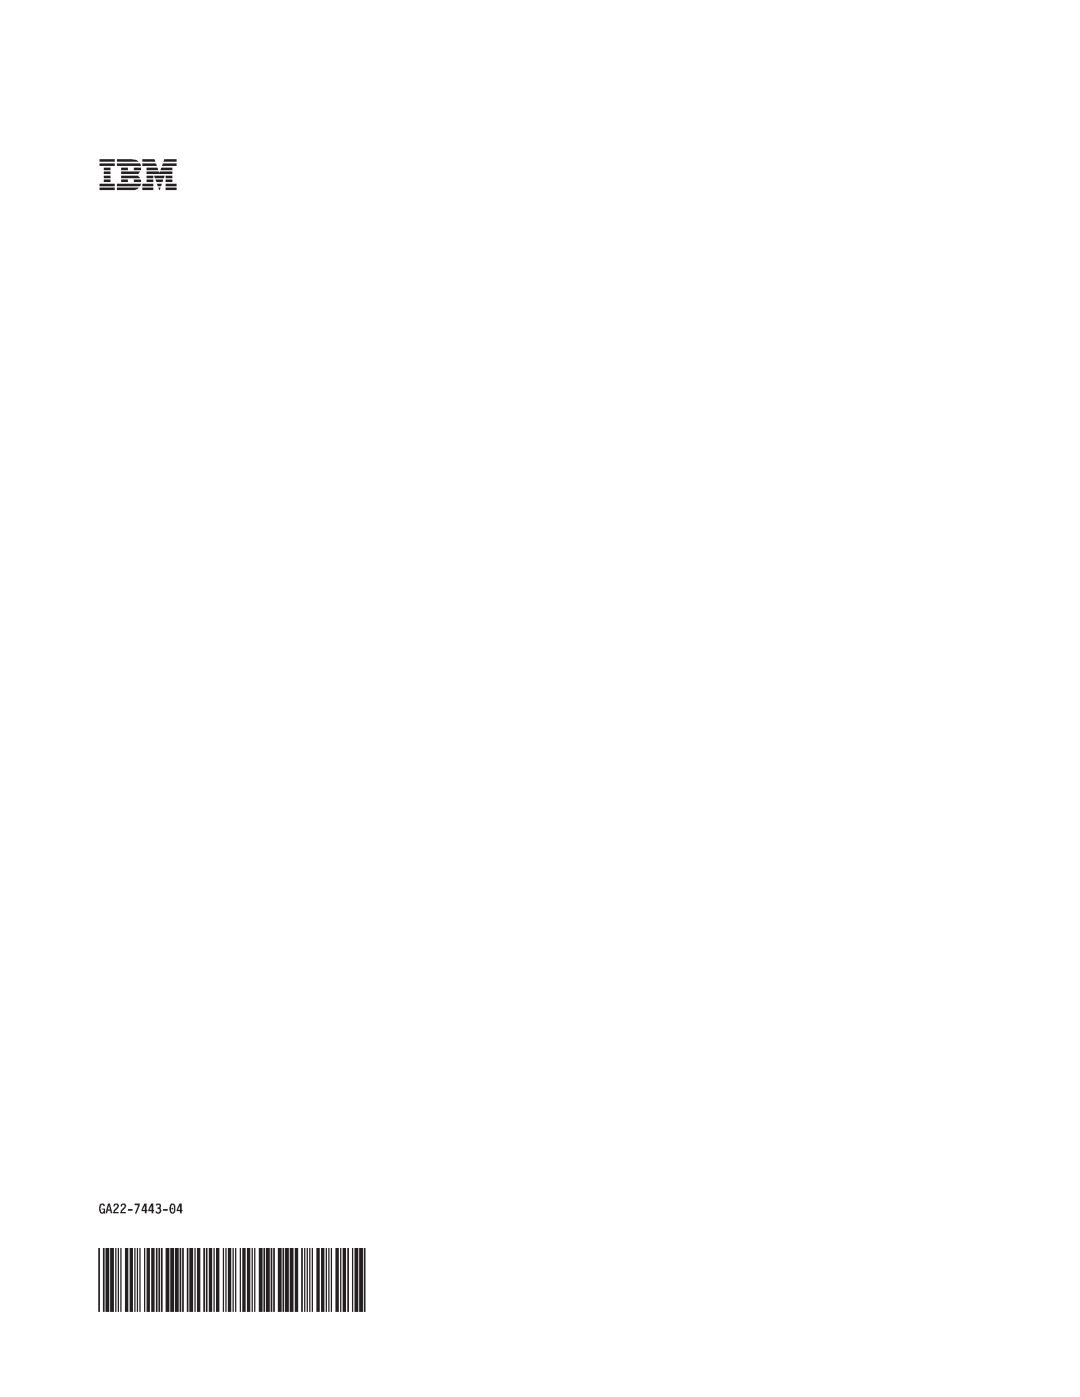 IBM RS/6000 SP manual GA22-7443-04 